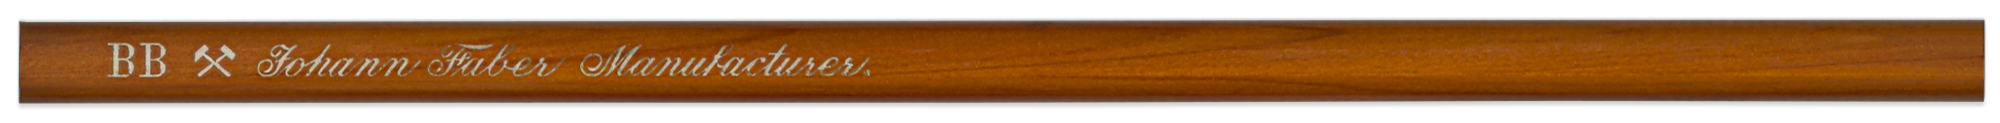 Johann Faber Manufacturer BB by Johann Faber | Brand Name Pencils